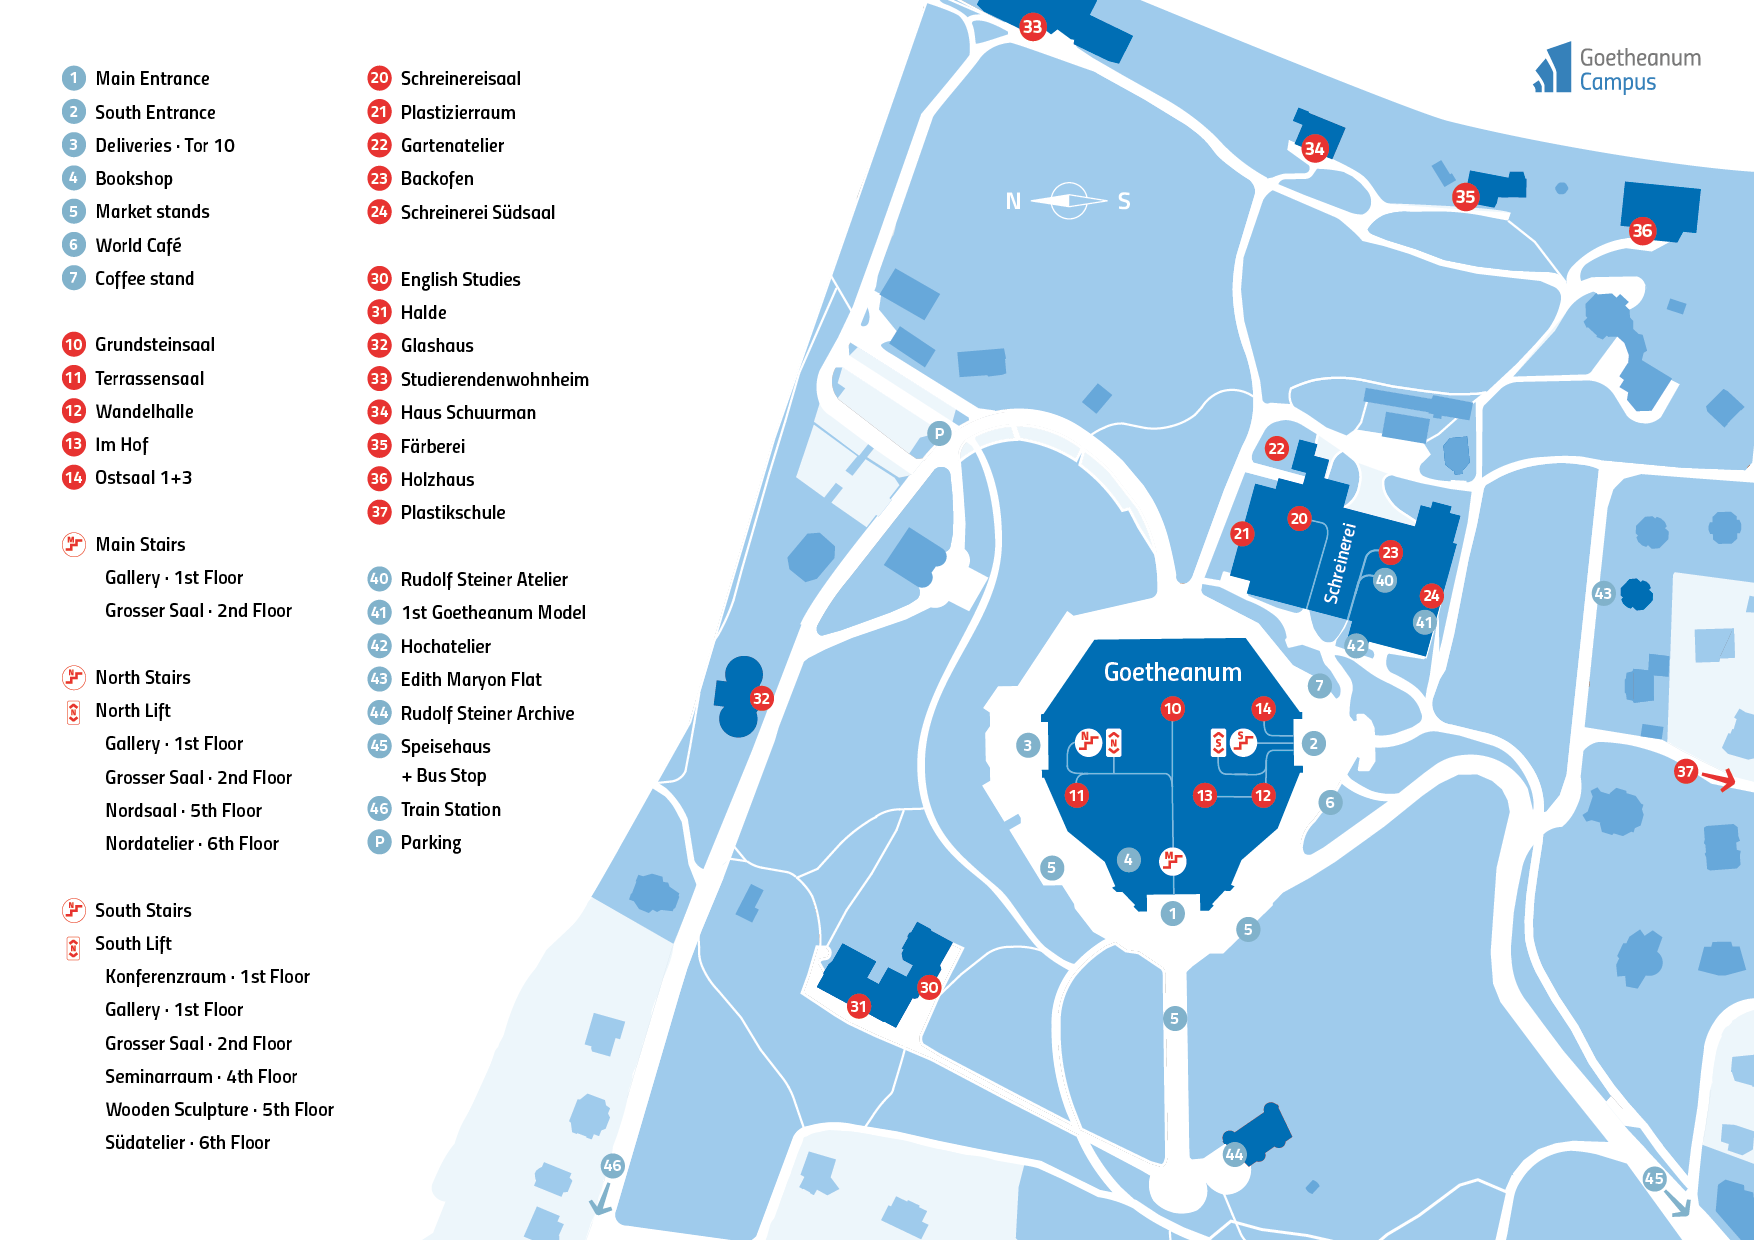 Goetheanum-Campus_Karten-mit-spezifischen-Lokalisierungen_231106ph_einzeln.png